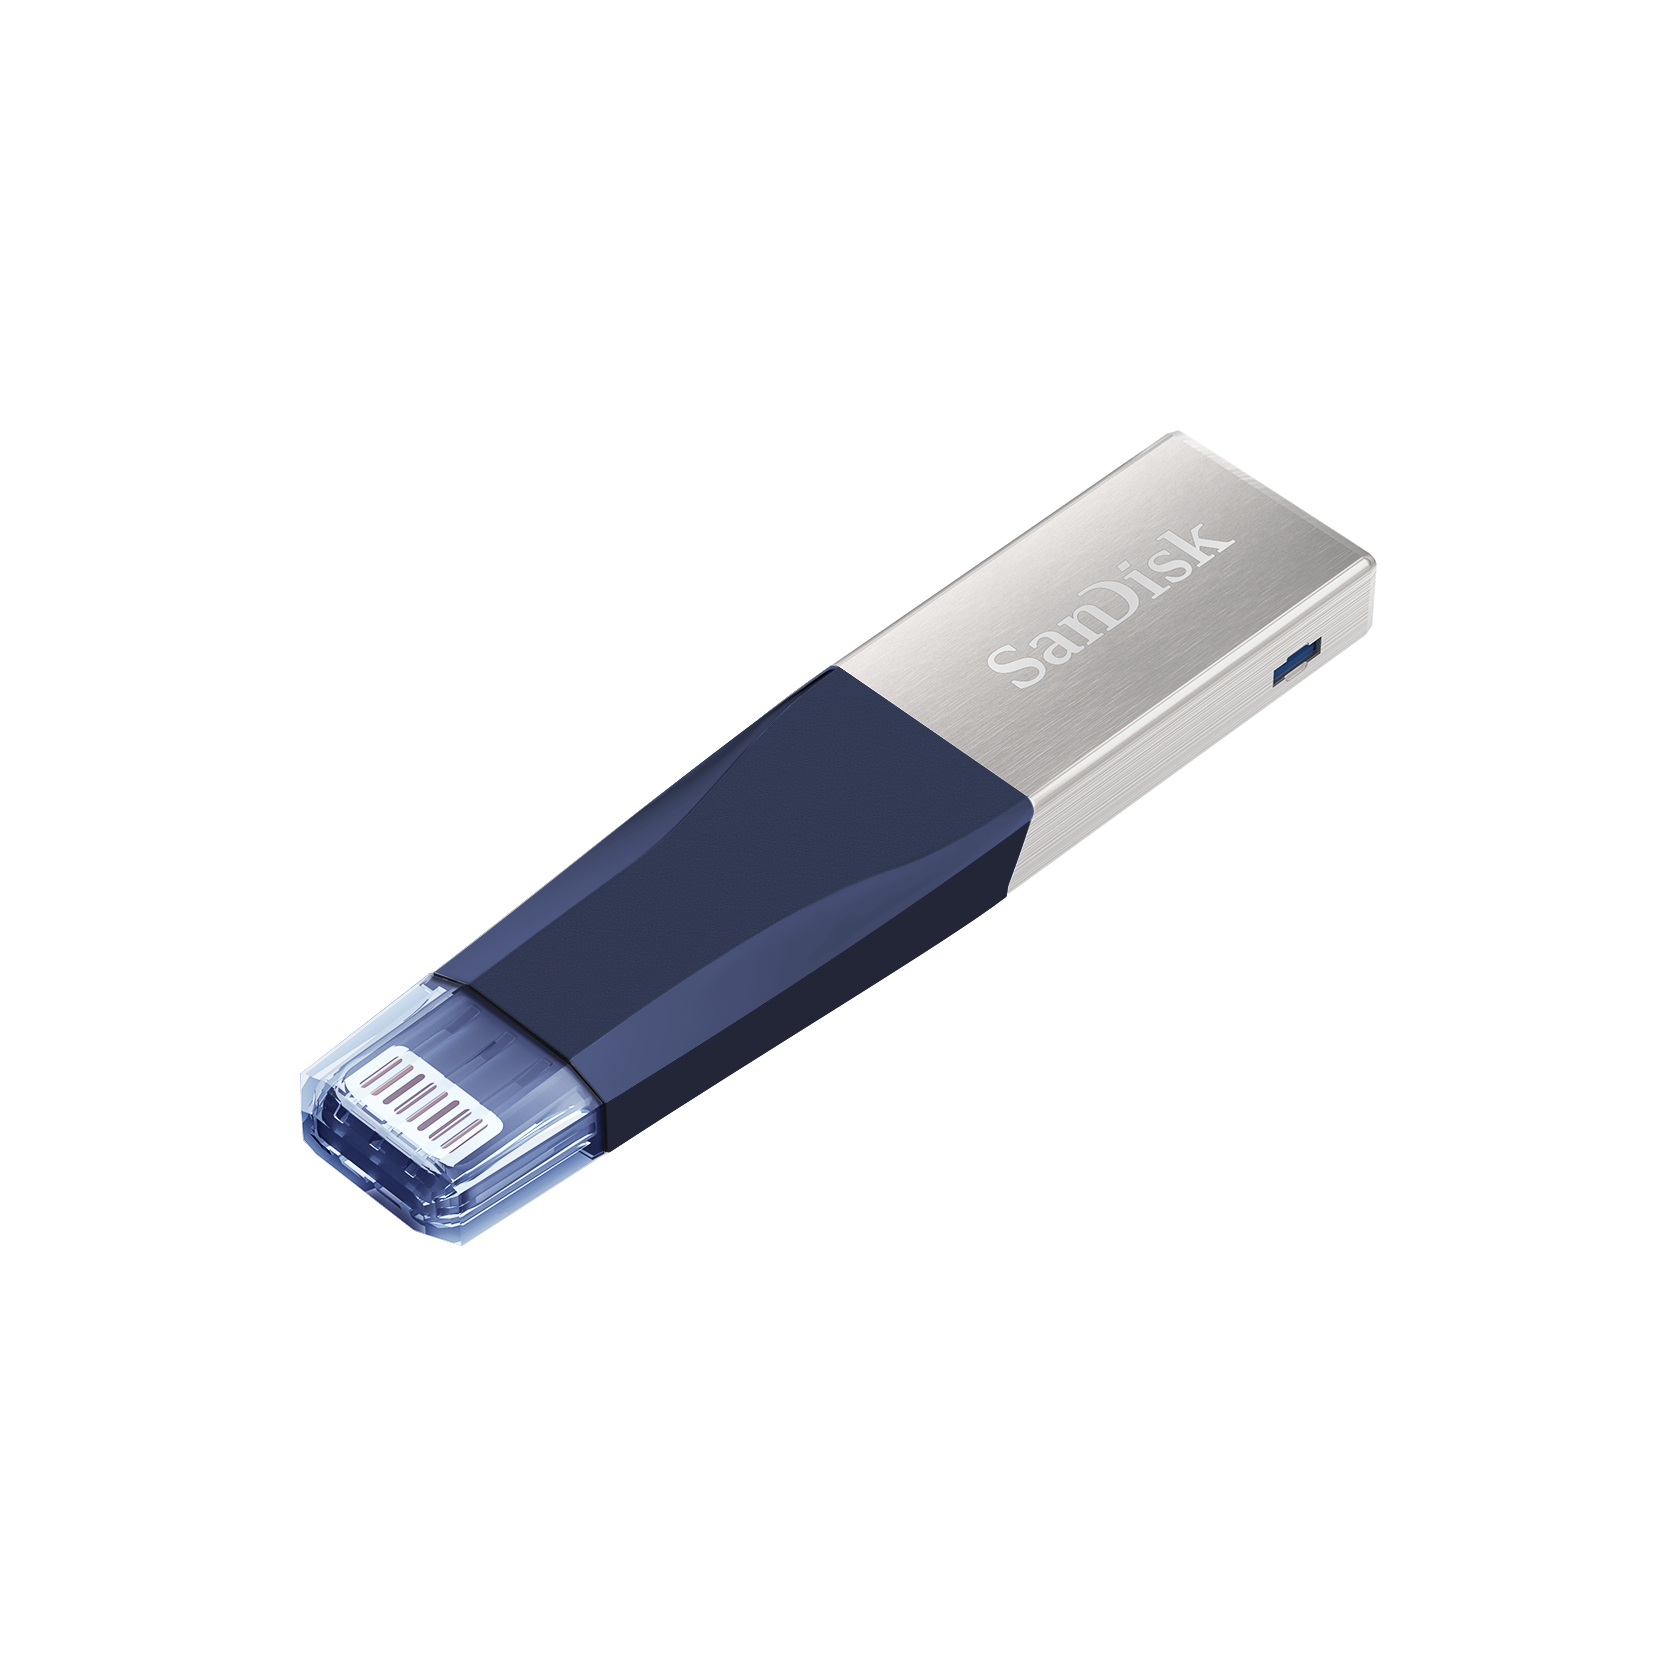 Sandisk iXPand Mini Lightning USB3.0 (32GB / 64GB / 128GB / 256GB) Flash Drive Pendrive